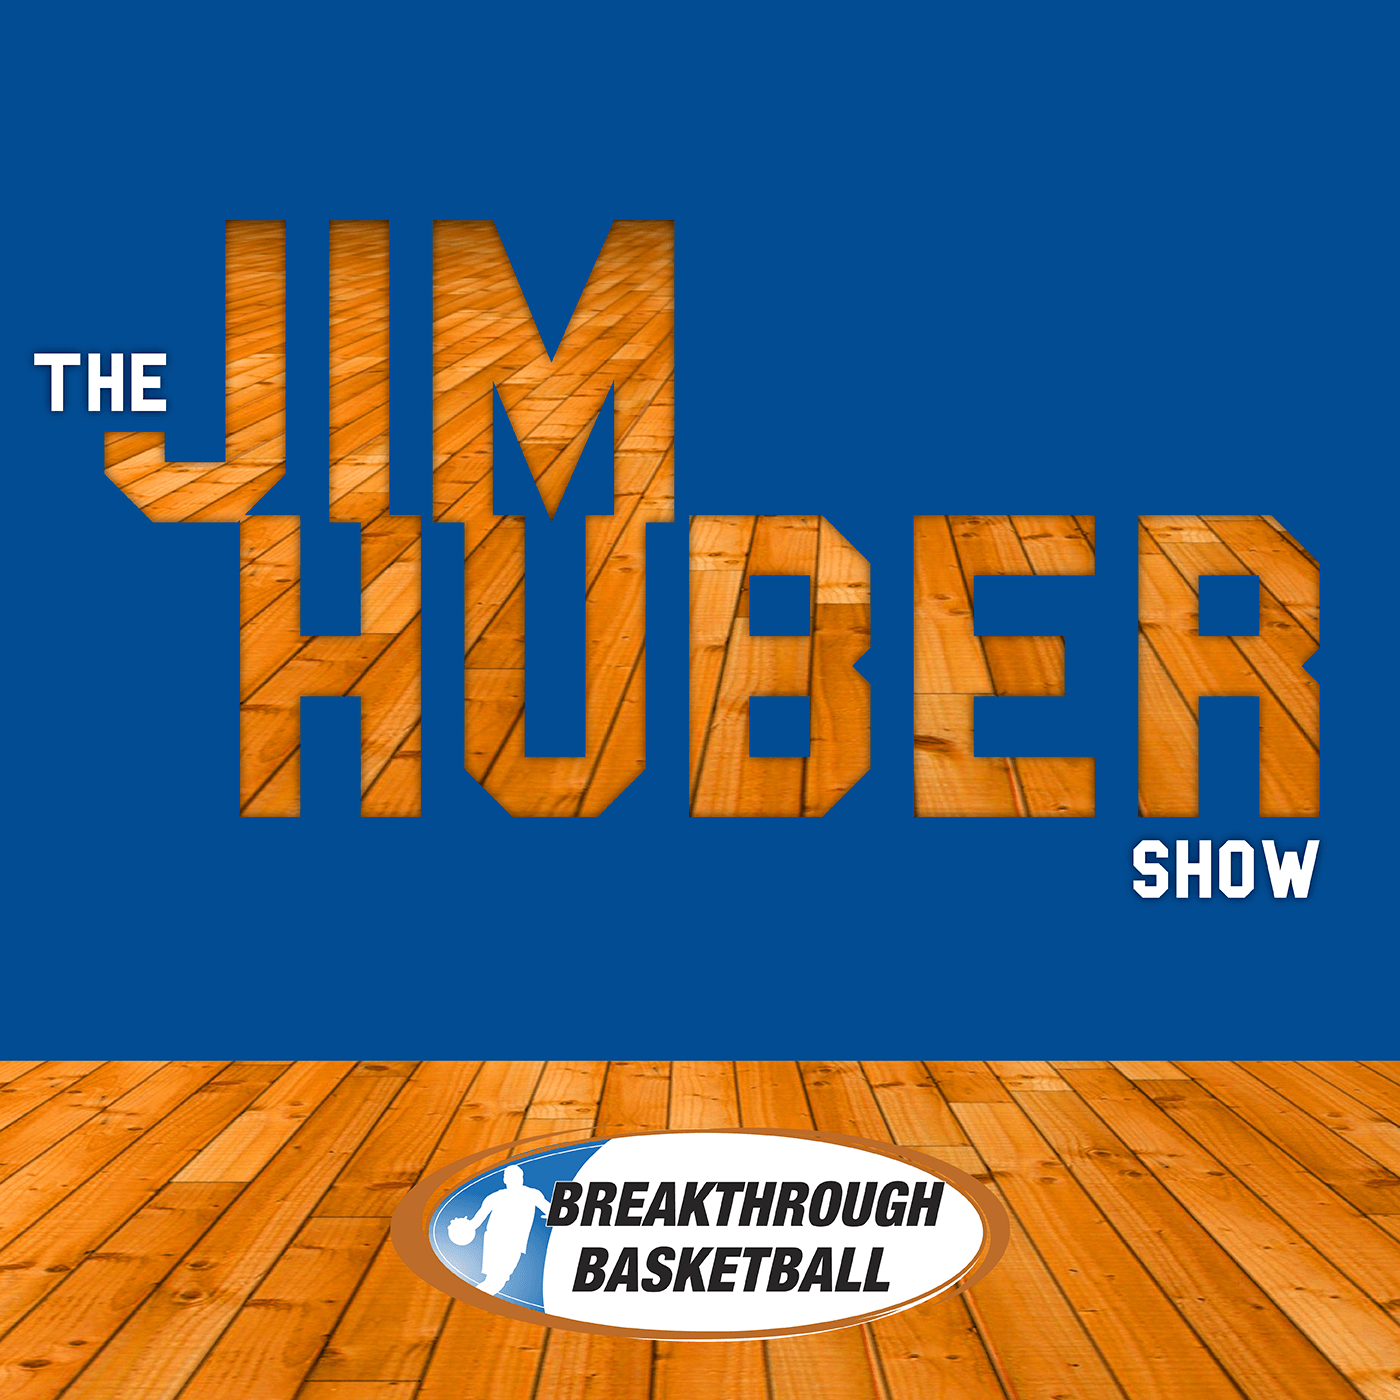 Breakthrough Basketball Logo - Breakthrough Basketball Jim Huber Show